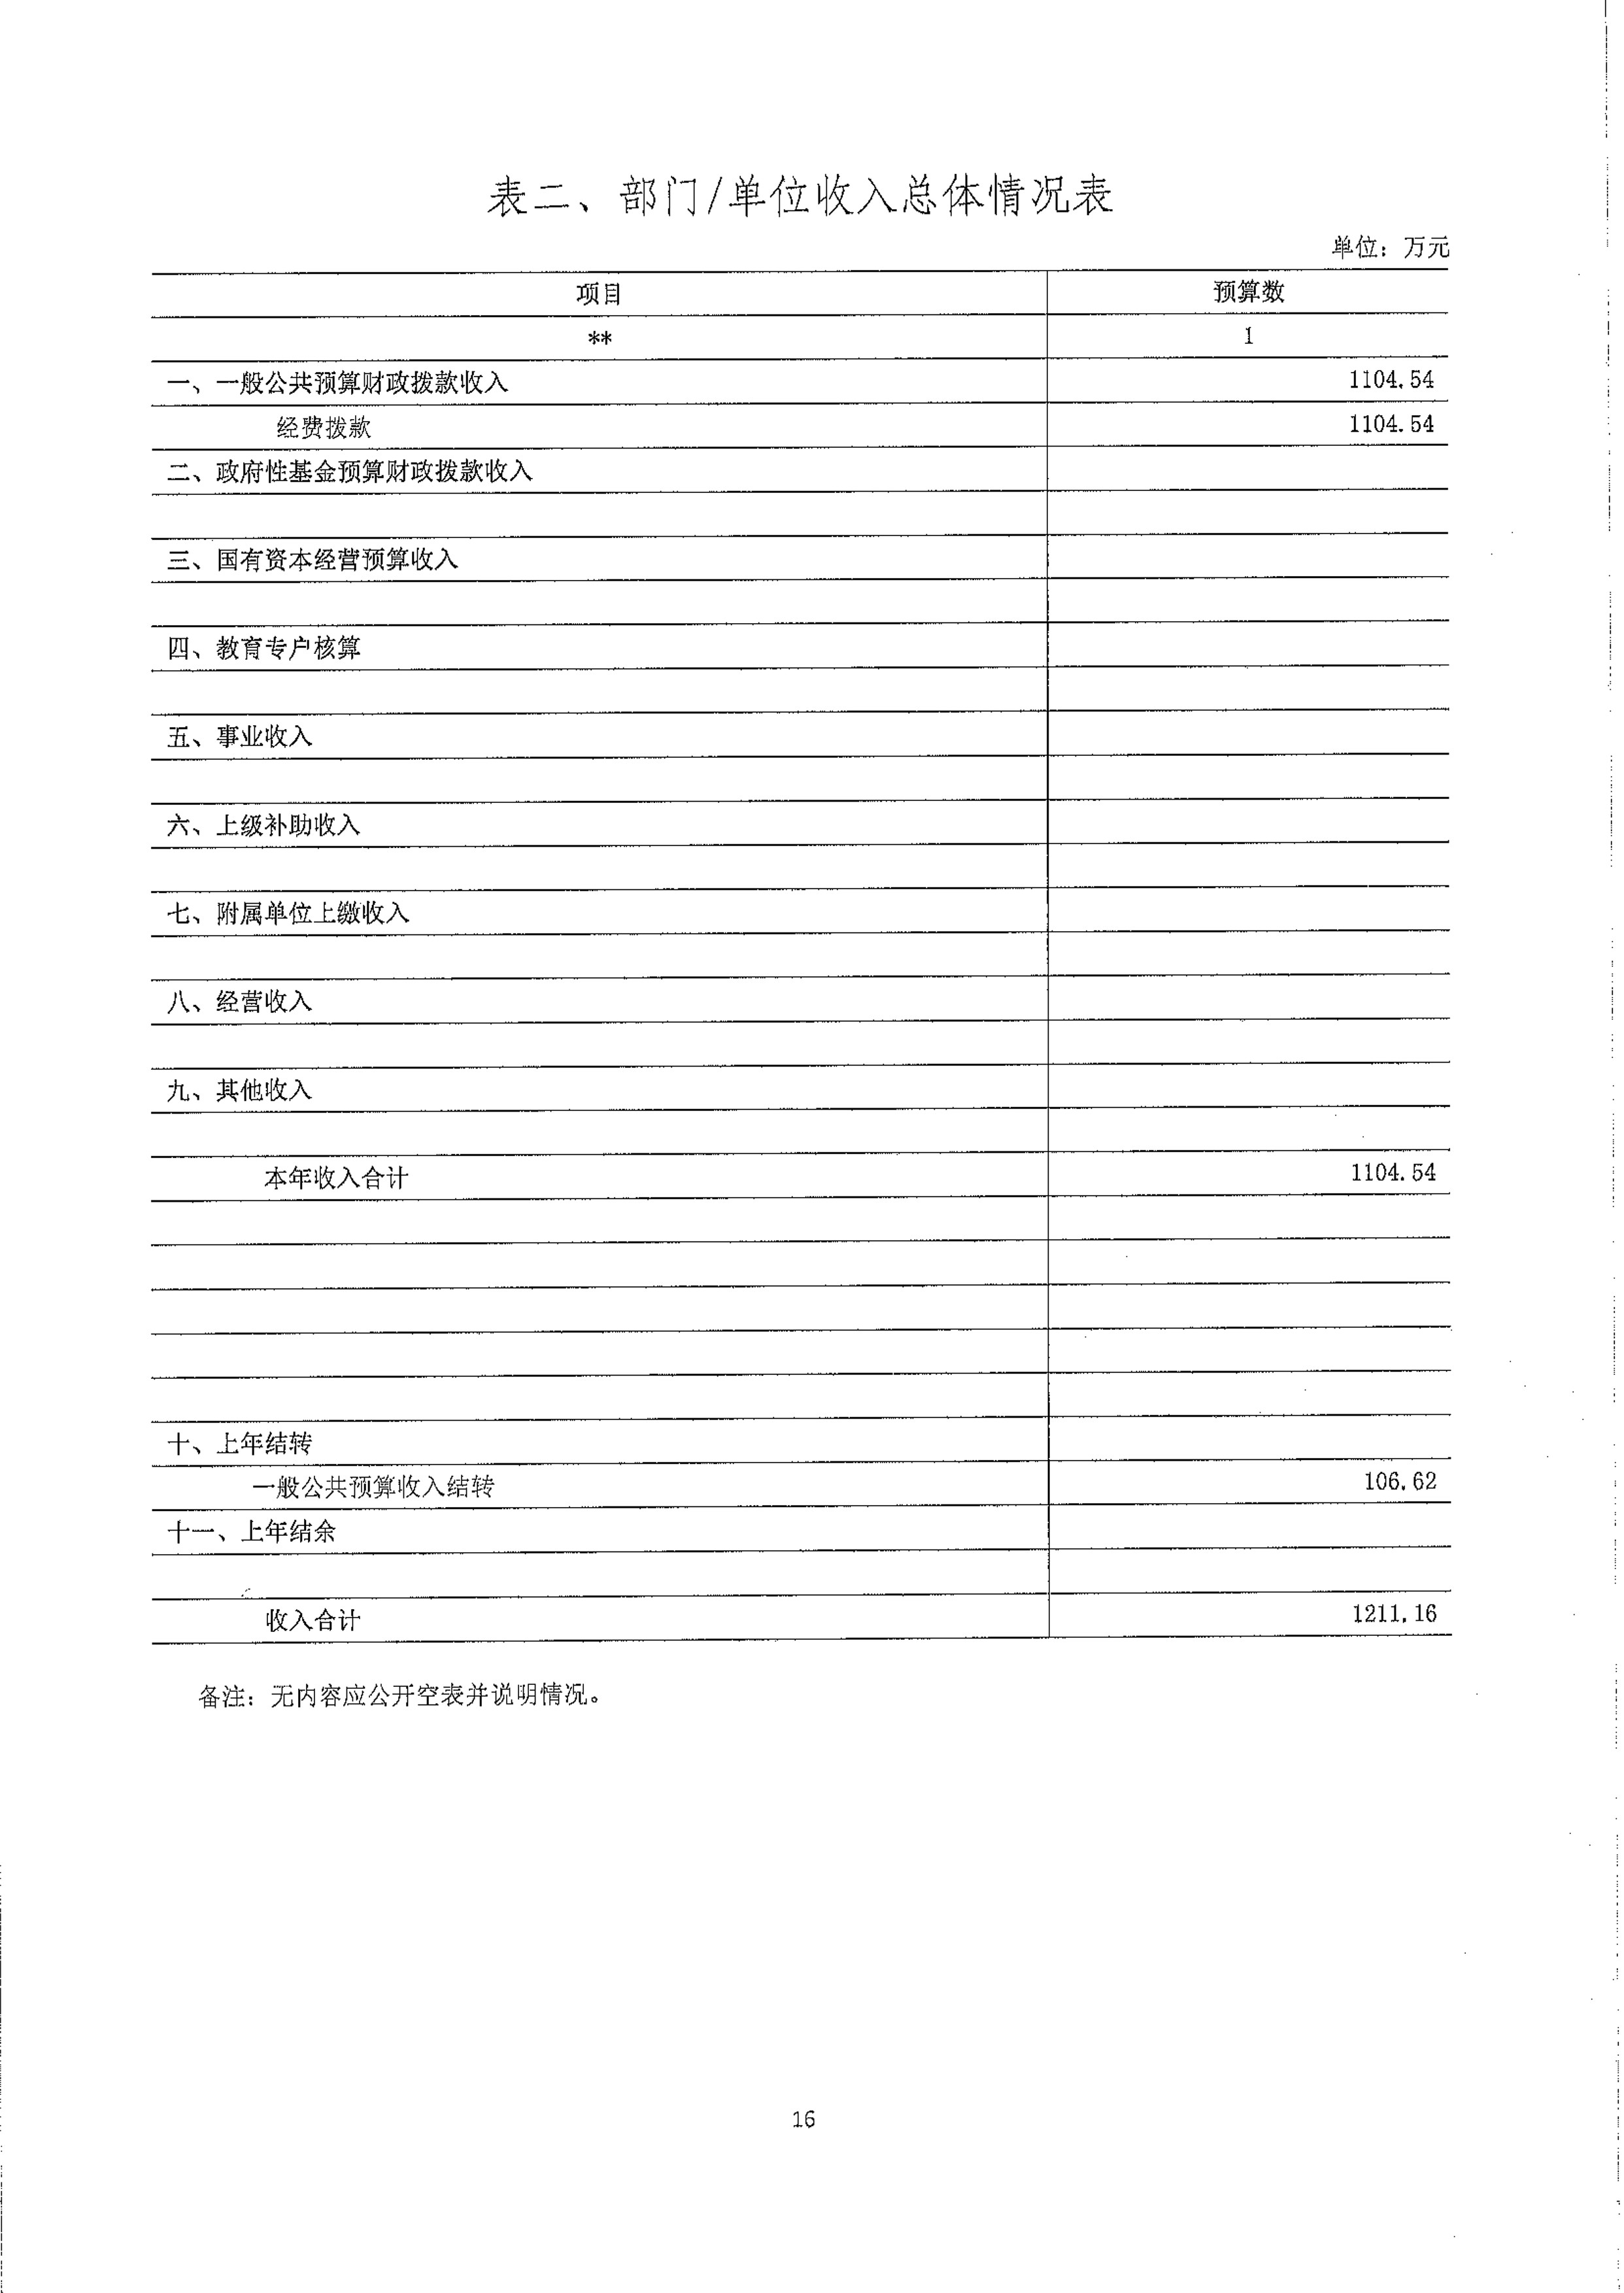 中共嘉峪关市委政法委员会2024年部门预算公开情况说明_17